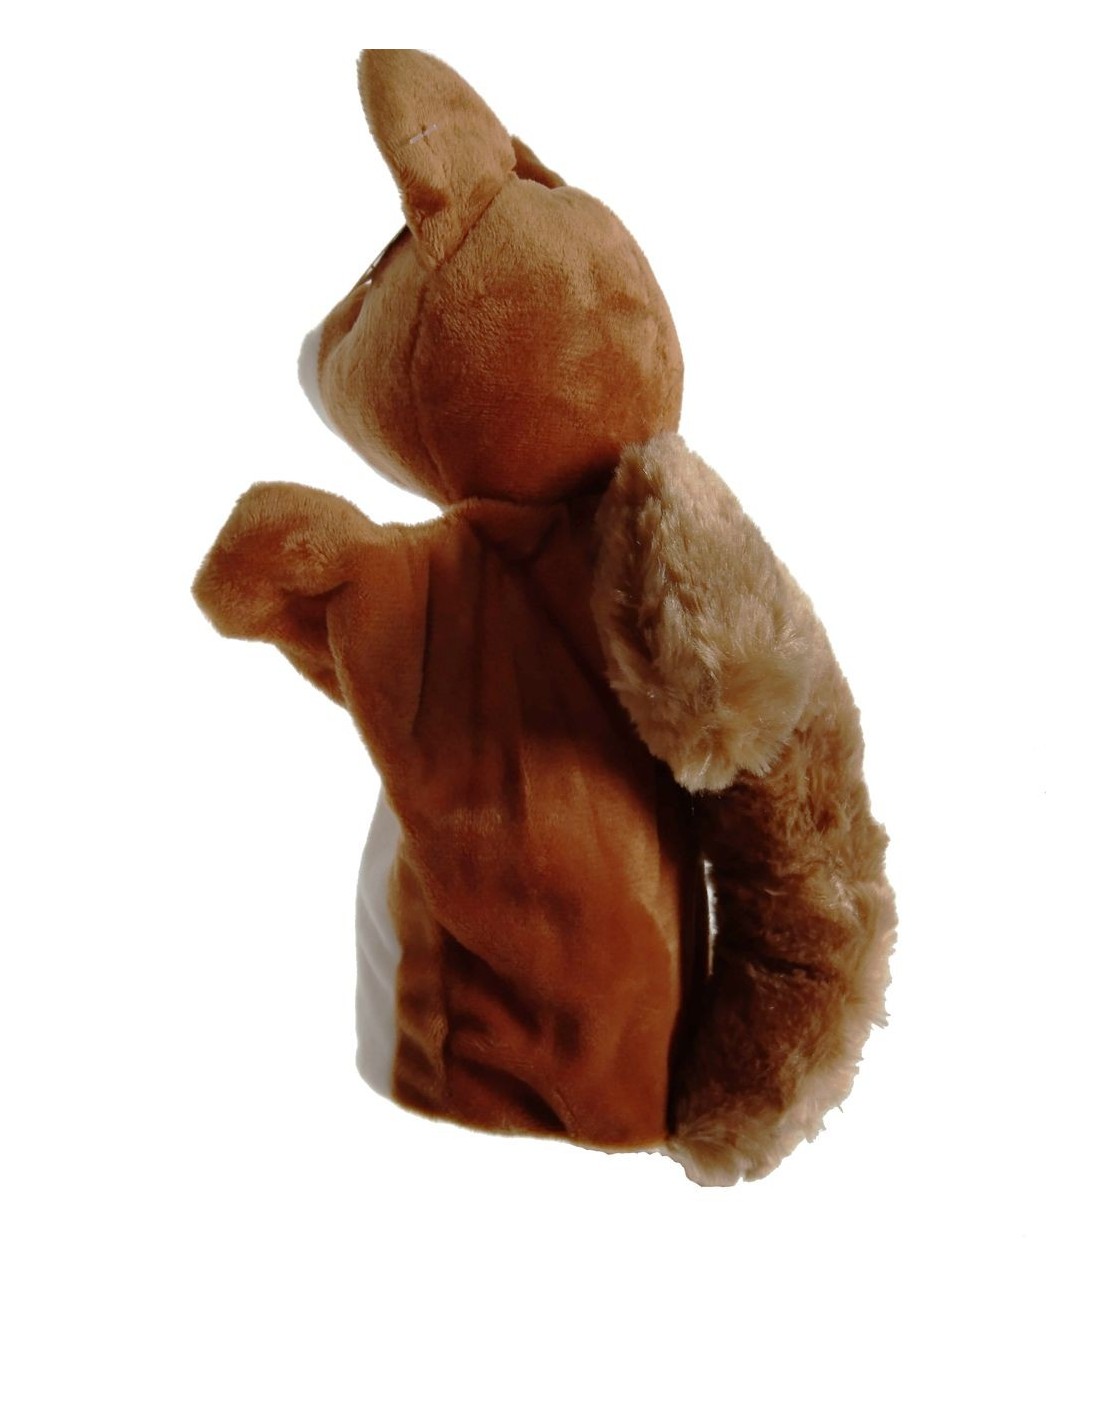 Marionnette à main écureuil en peluche douce, jouet classique traditionnel  pour garçons et filles. Mesures: 26x12x10 cm.